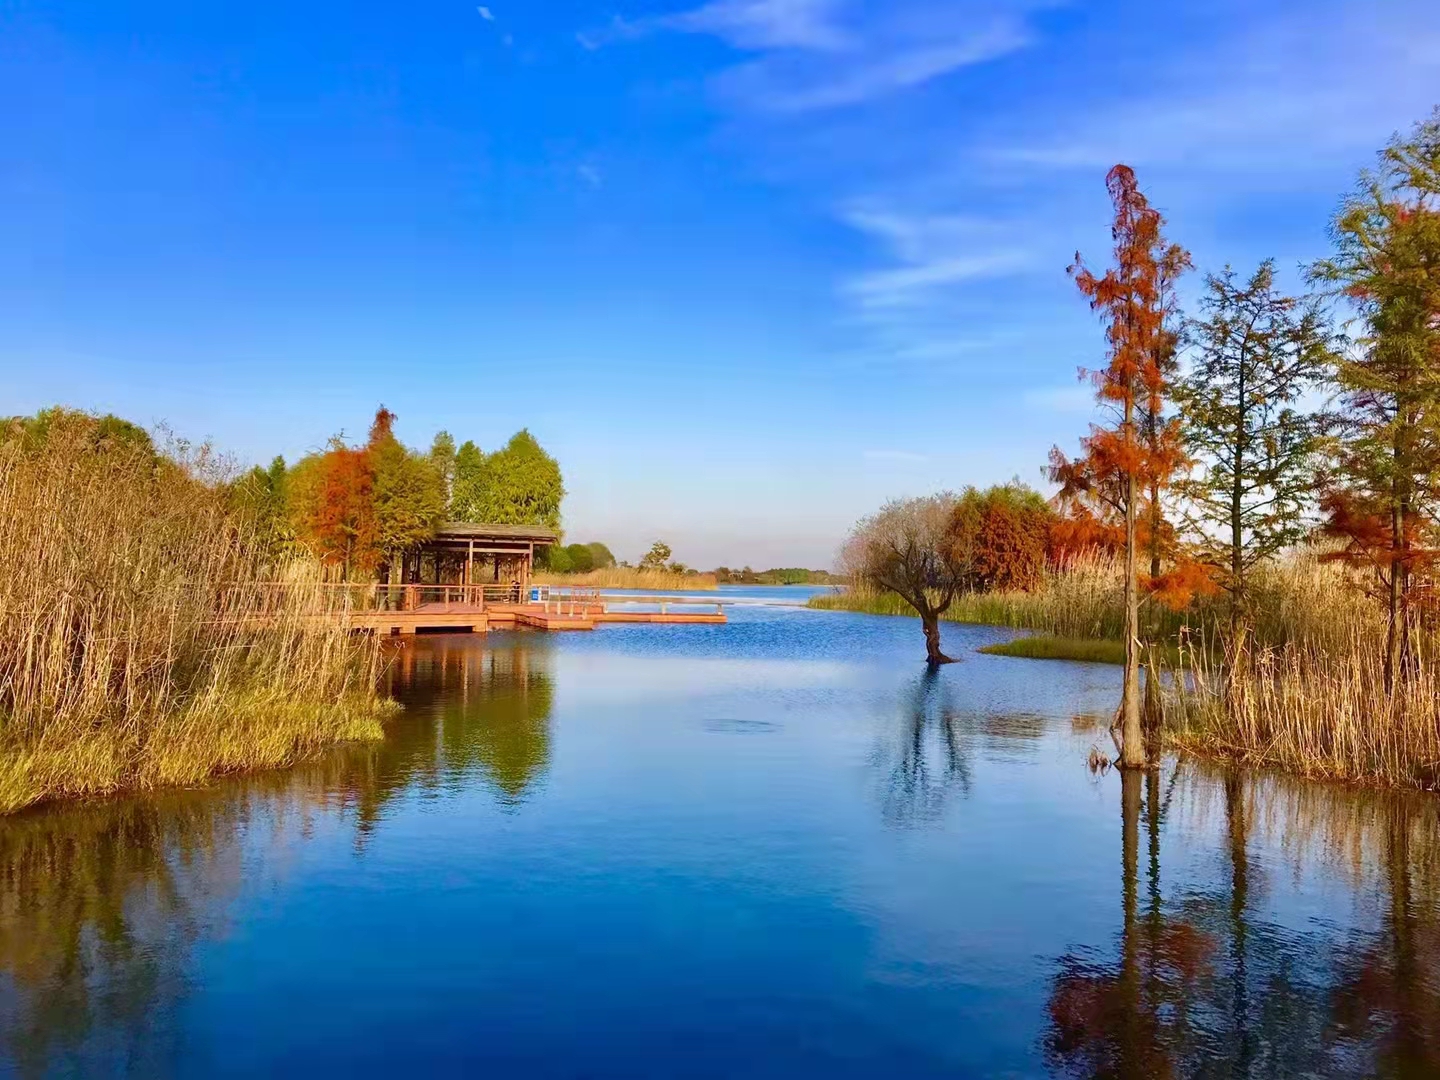 梁鸿国家湿地公园,主题景区,无锡鸿山旅游度假区